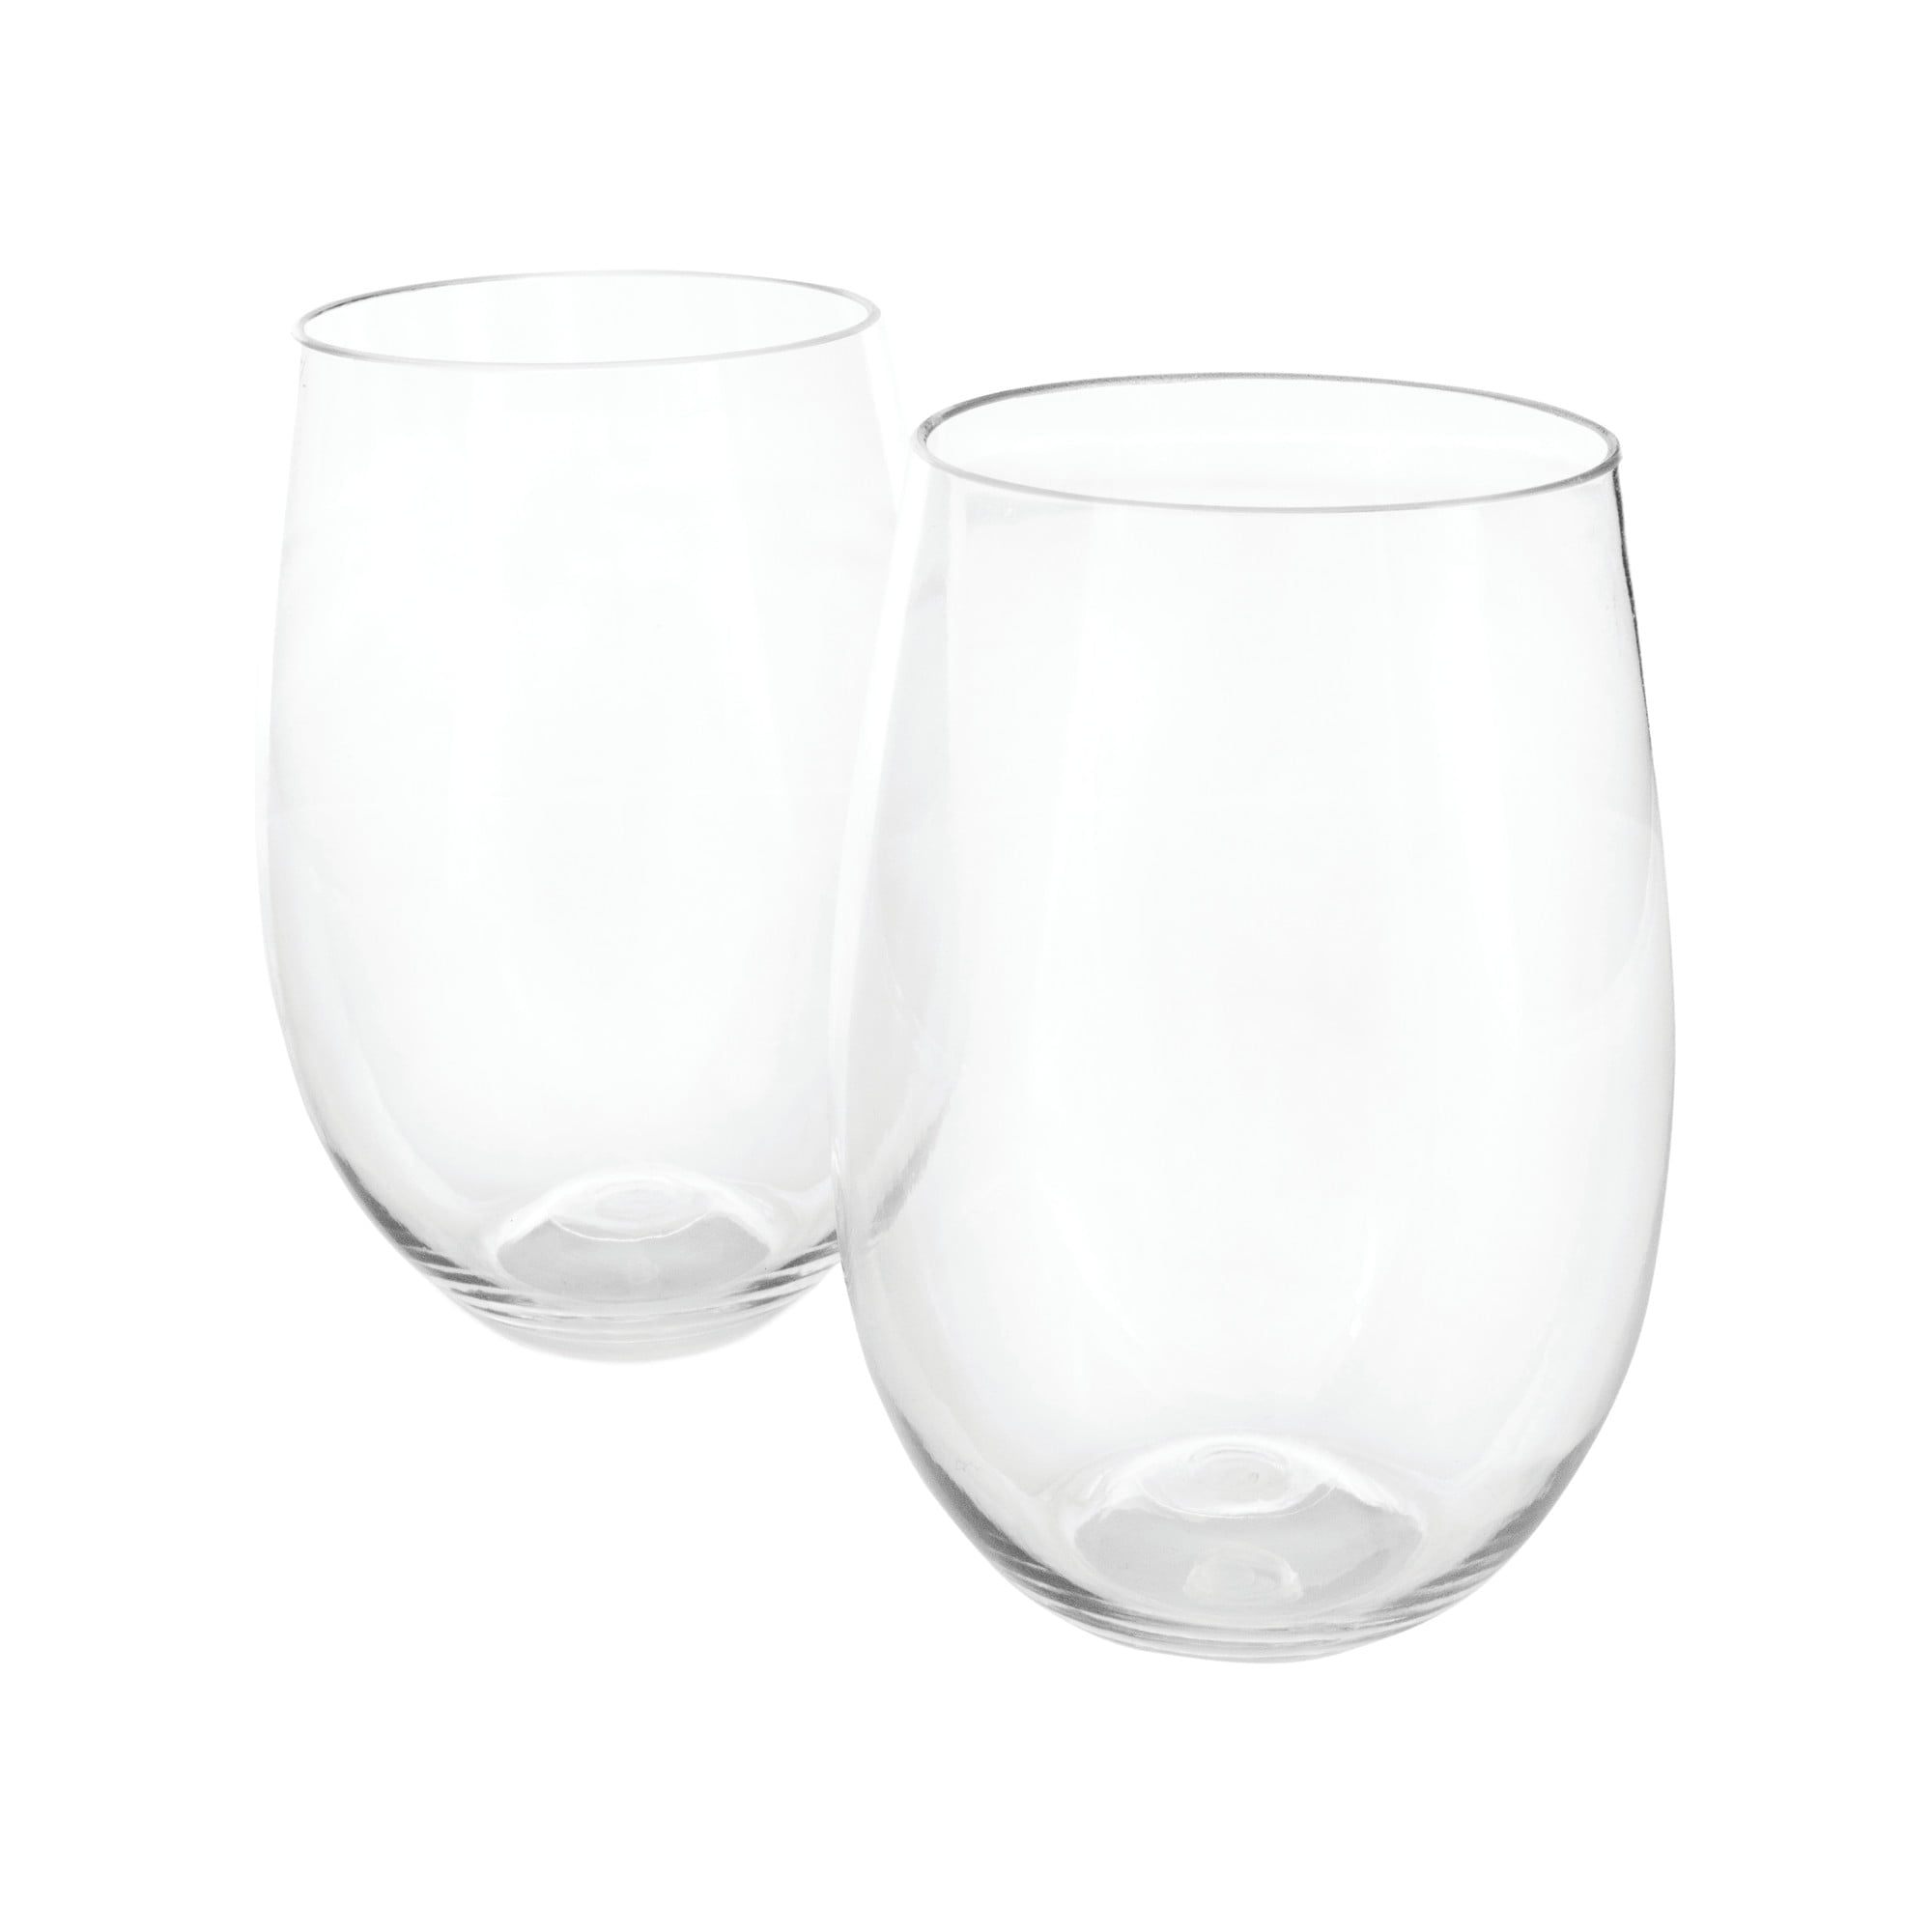 15 Oz Tidepools Acrylic Stemless Wine Glass